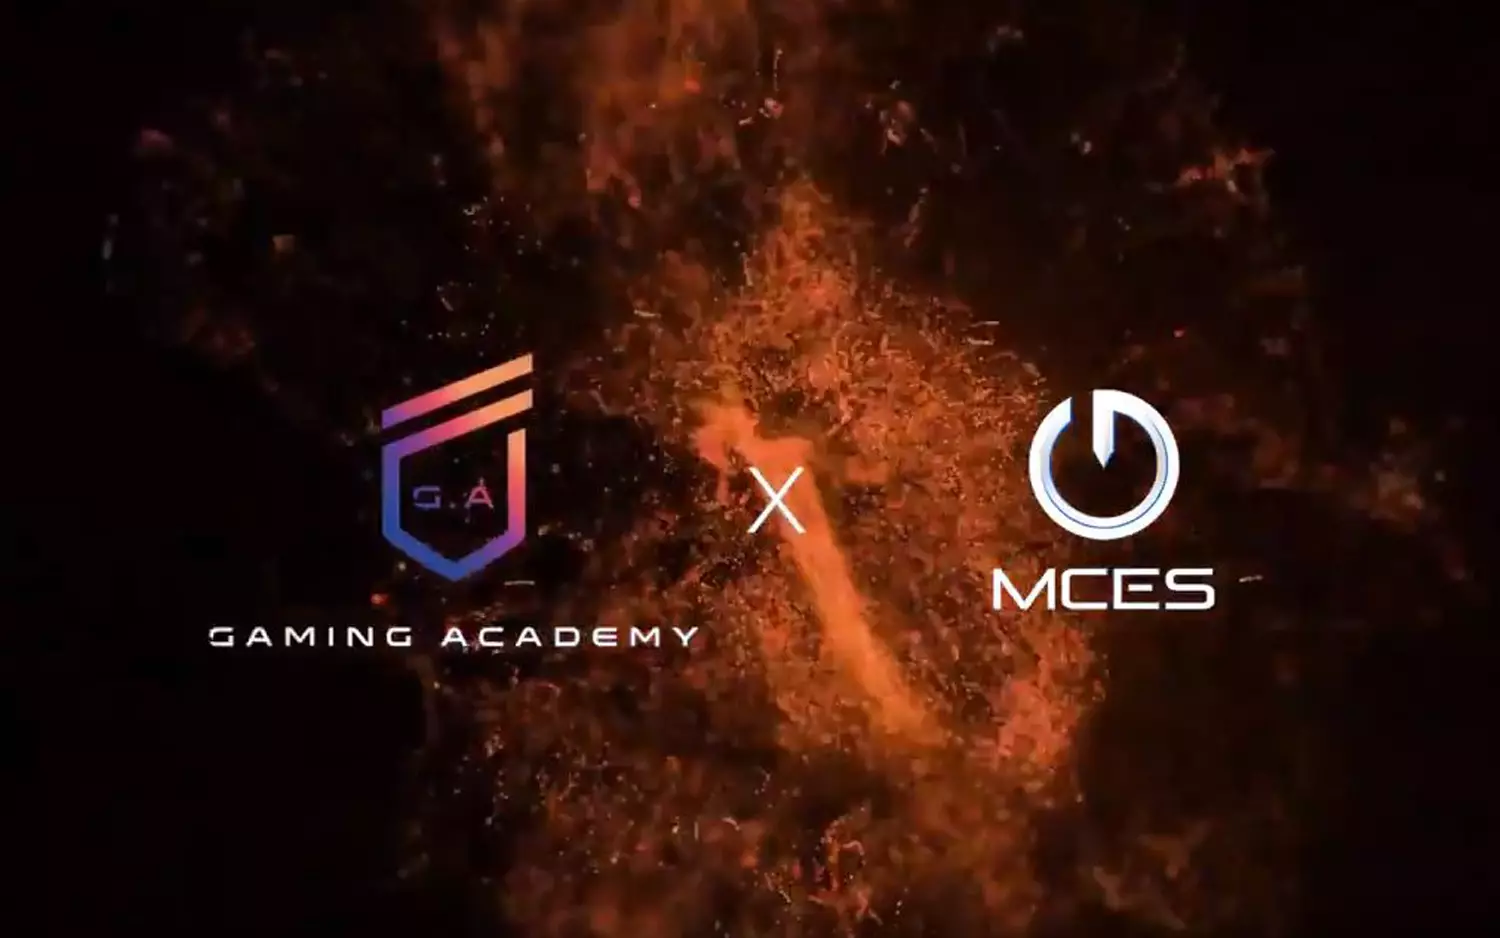 MCES et G. Academy